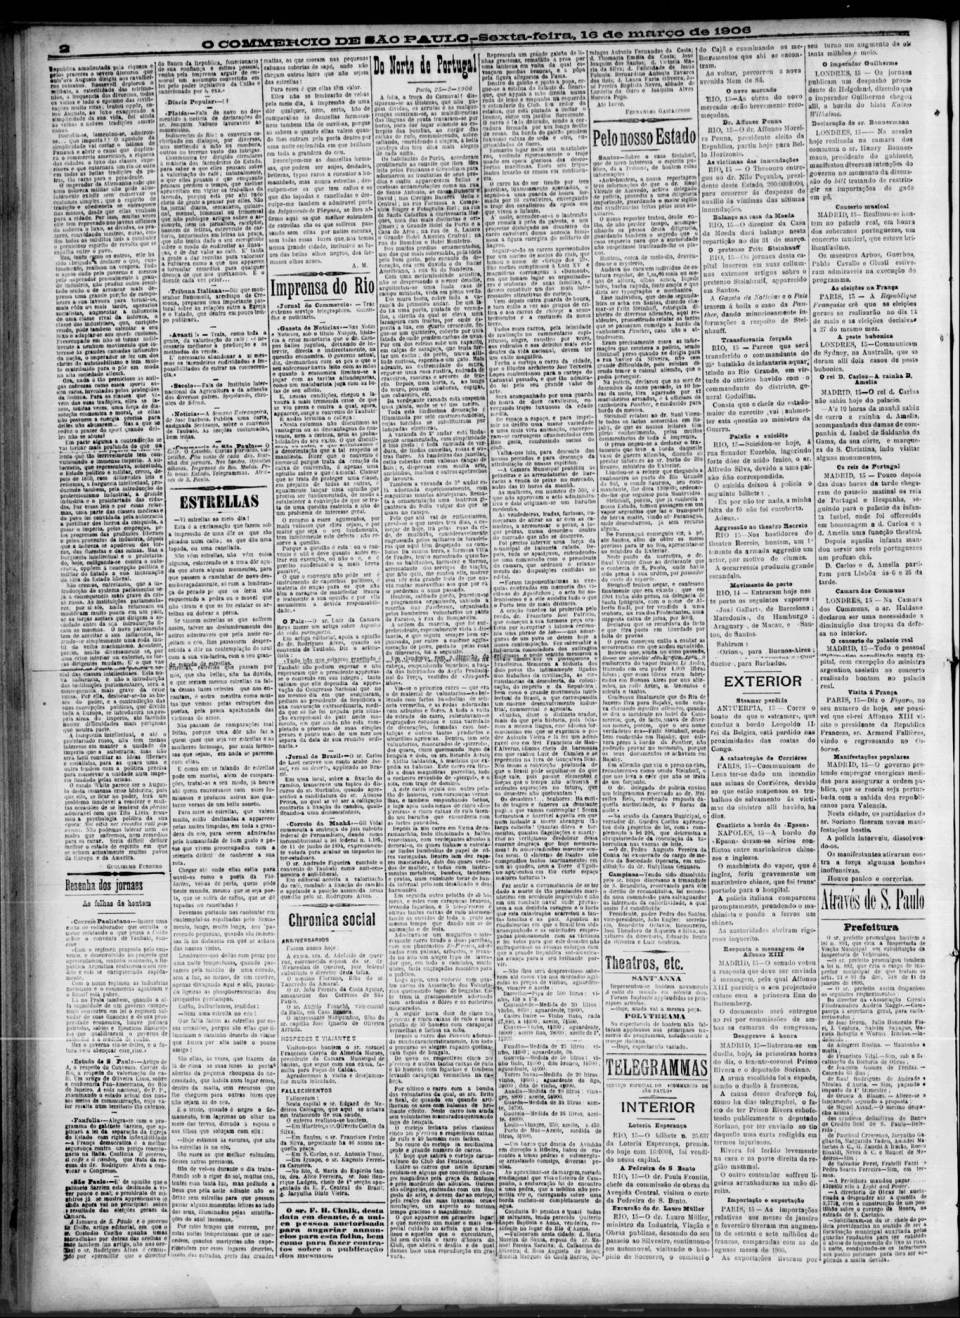 art-sao-carlos-nota-falecimento-antonio-tinos-jornal-do-comercio-16-3-1906-pagina